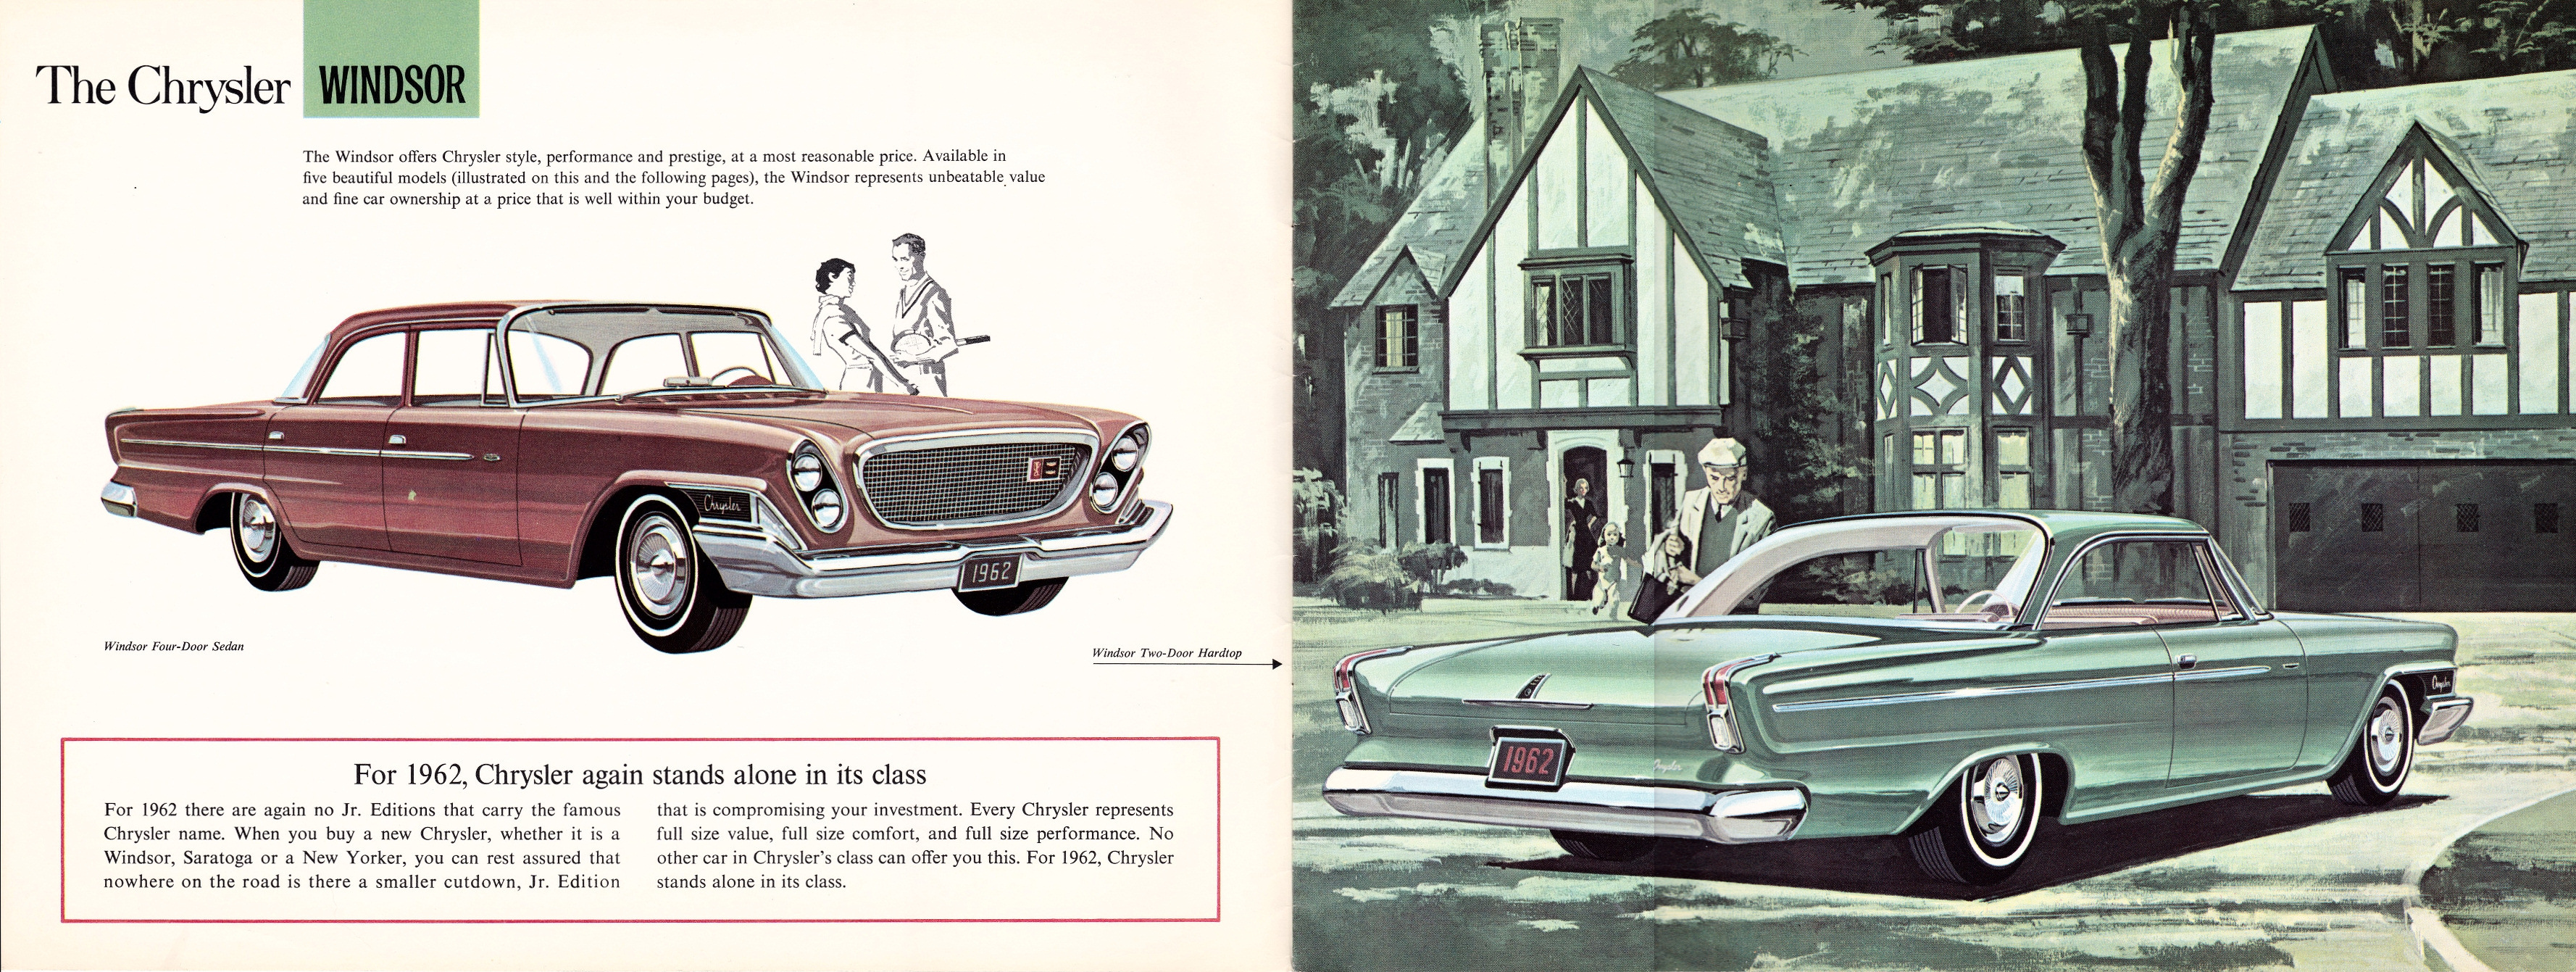 1962_Chrysler_Full_Line_Cdn-02-03